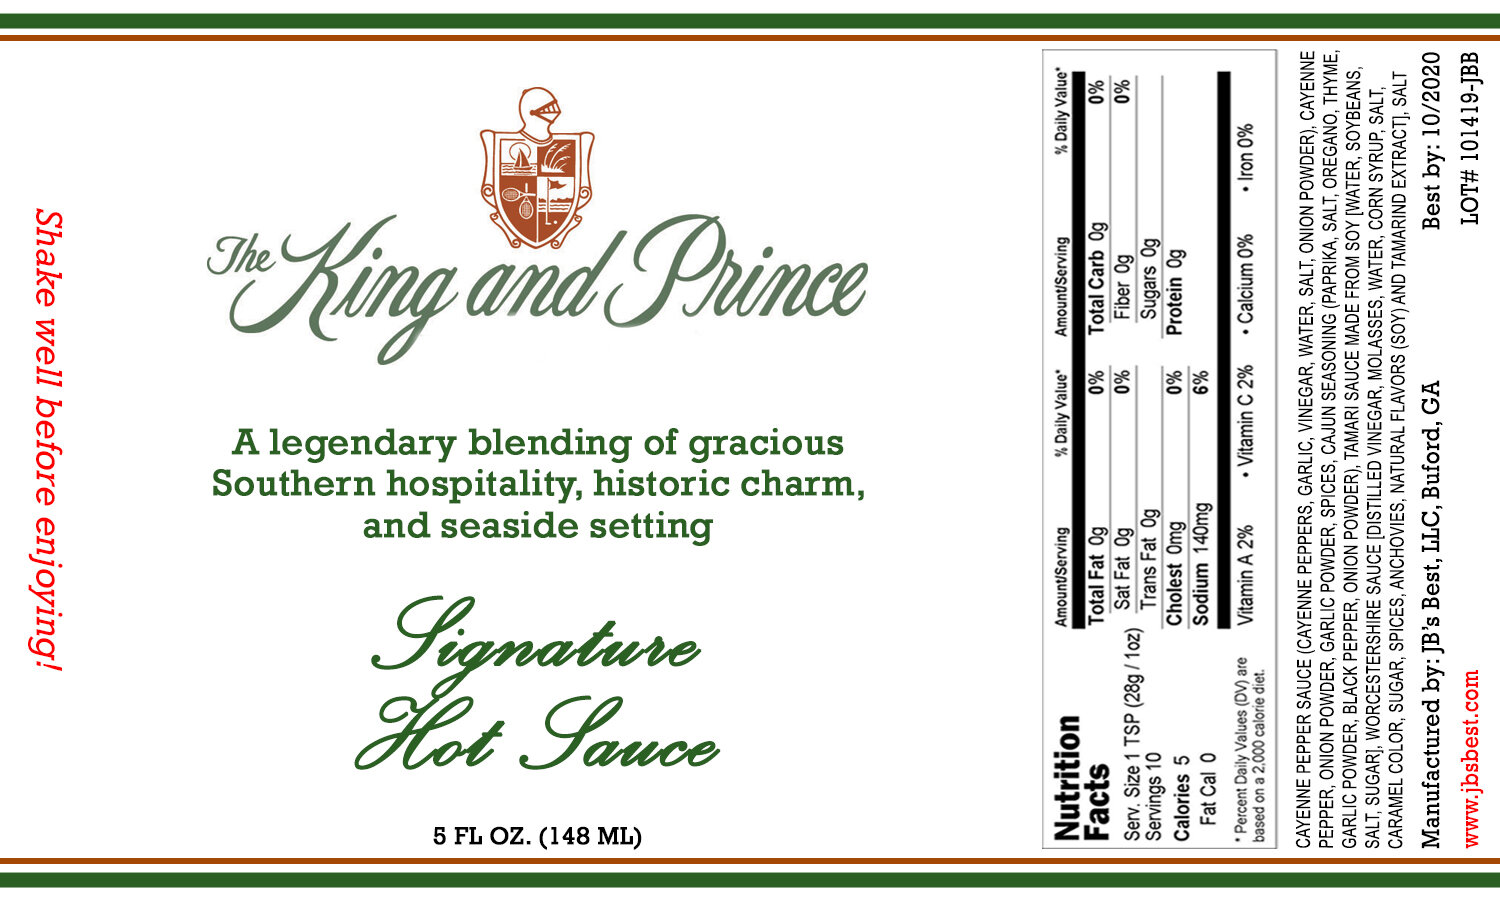 King-and-Prince-3x5.jpg